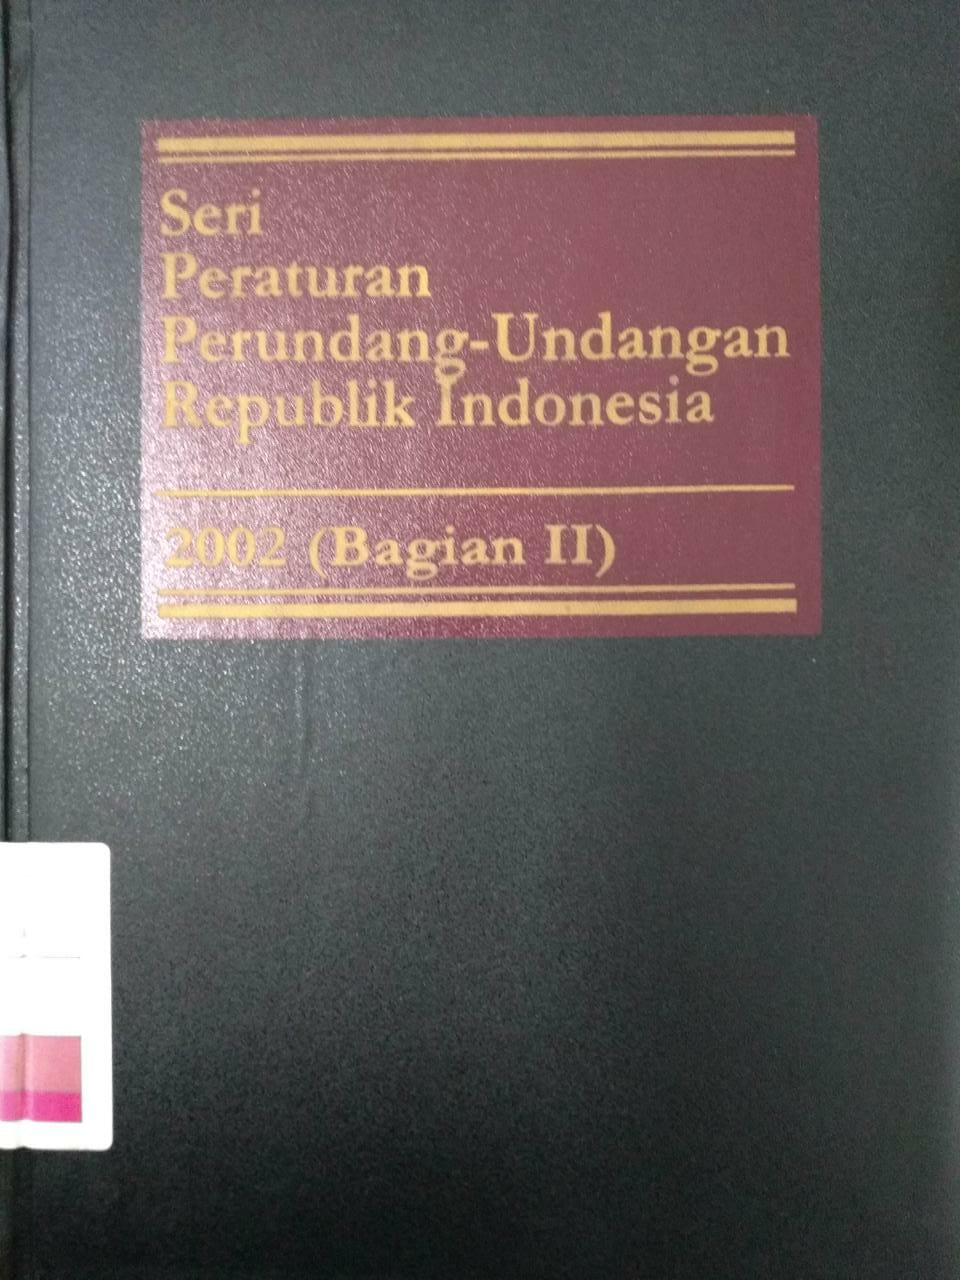 Seri Peraturan Perundang-undangan Republik Indonesia 2003 (Bagian II)